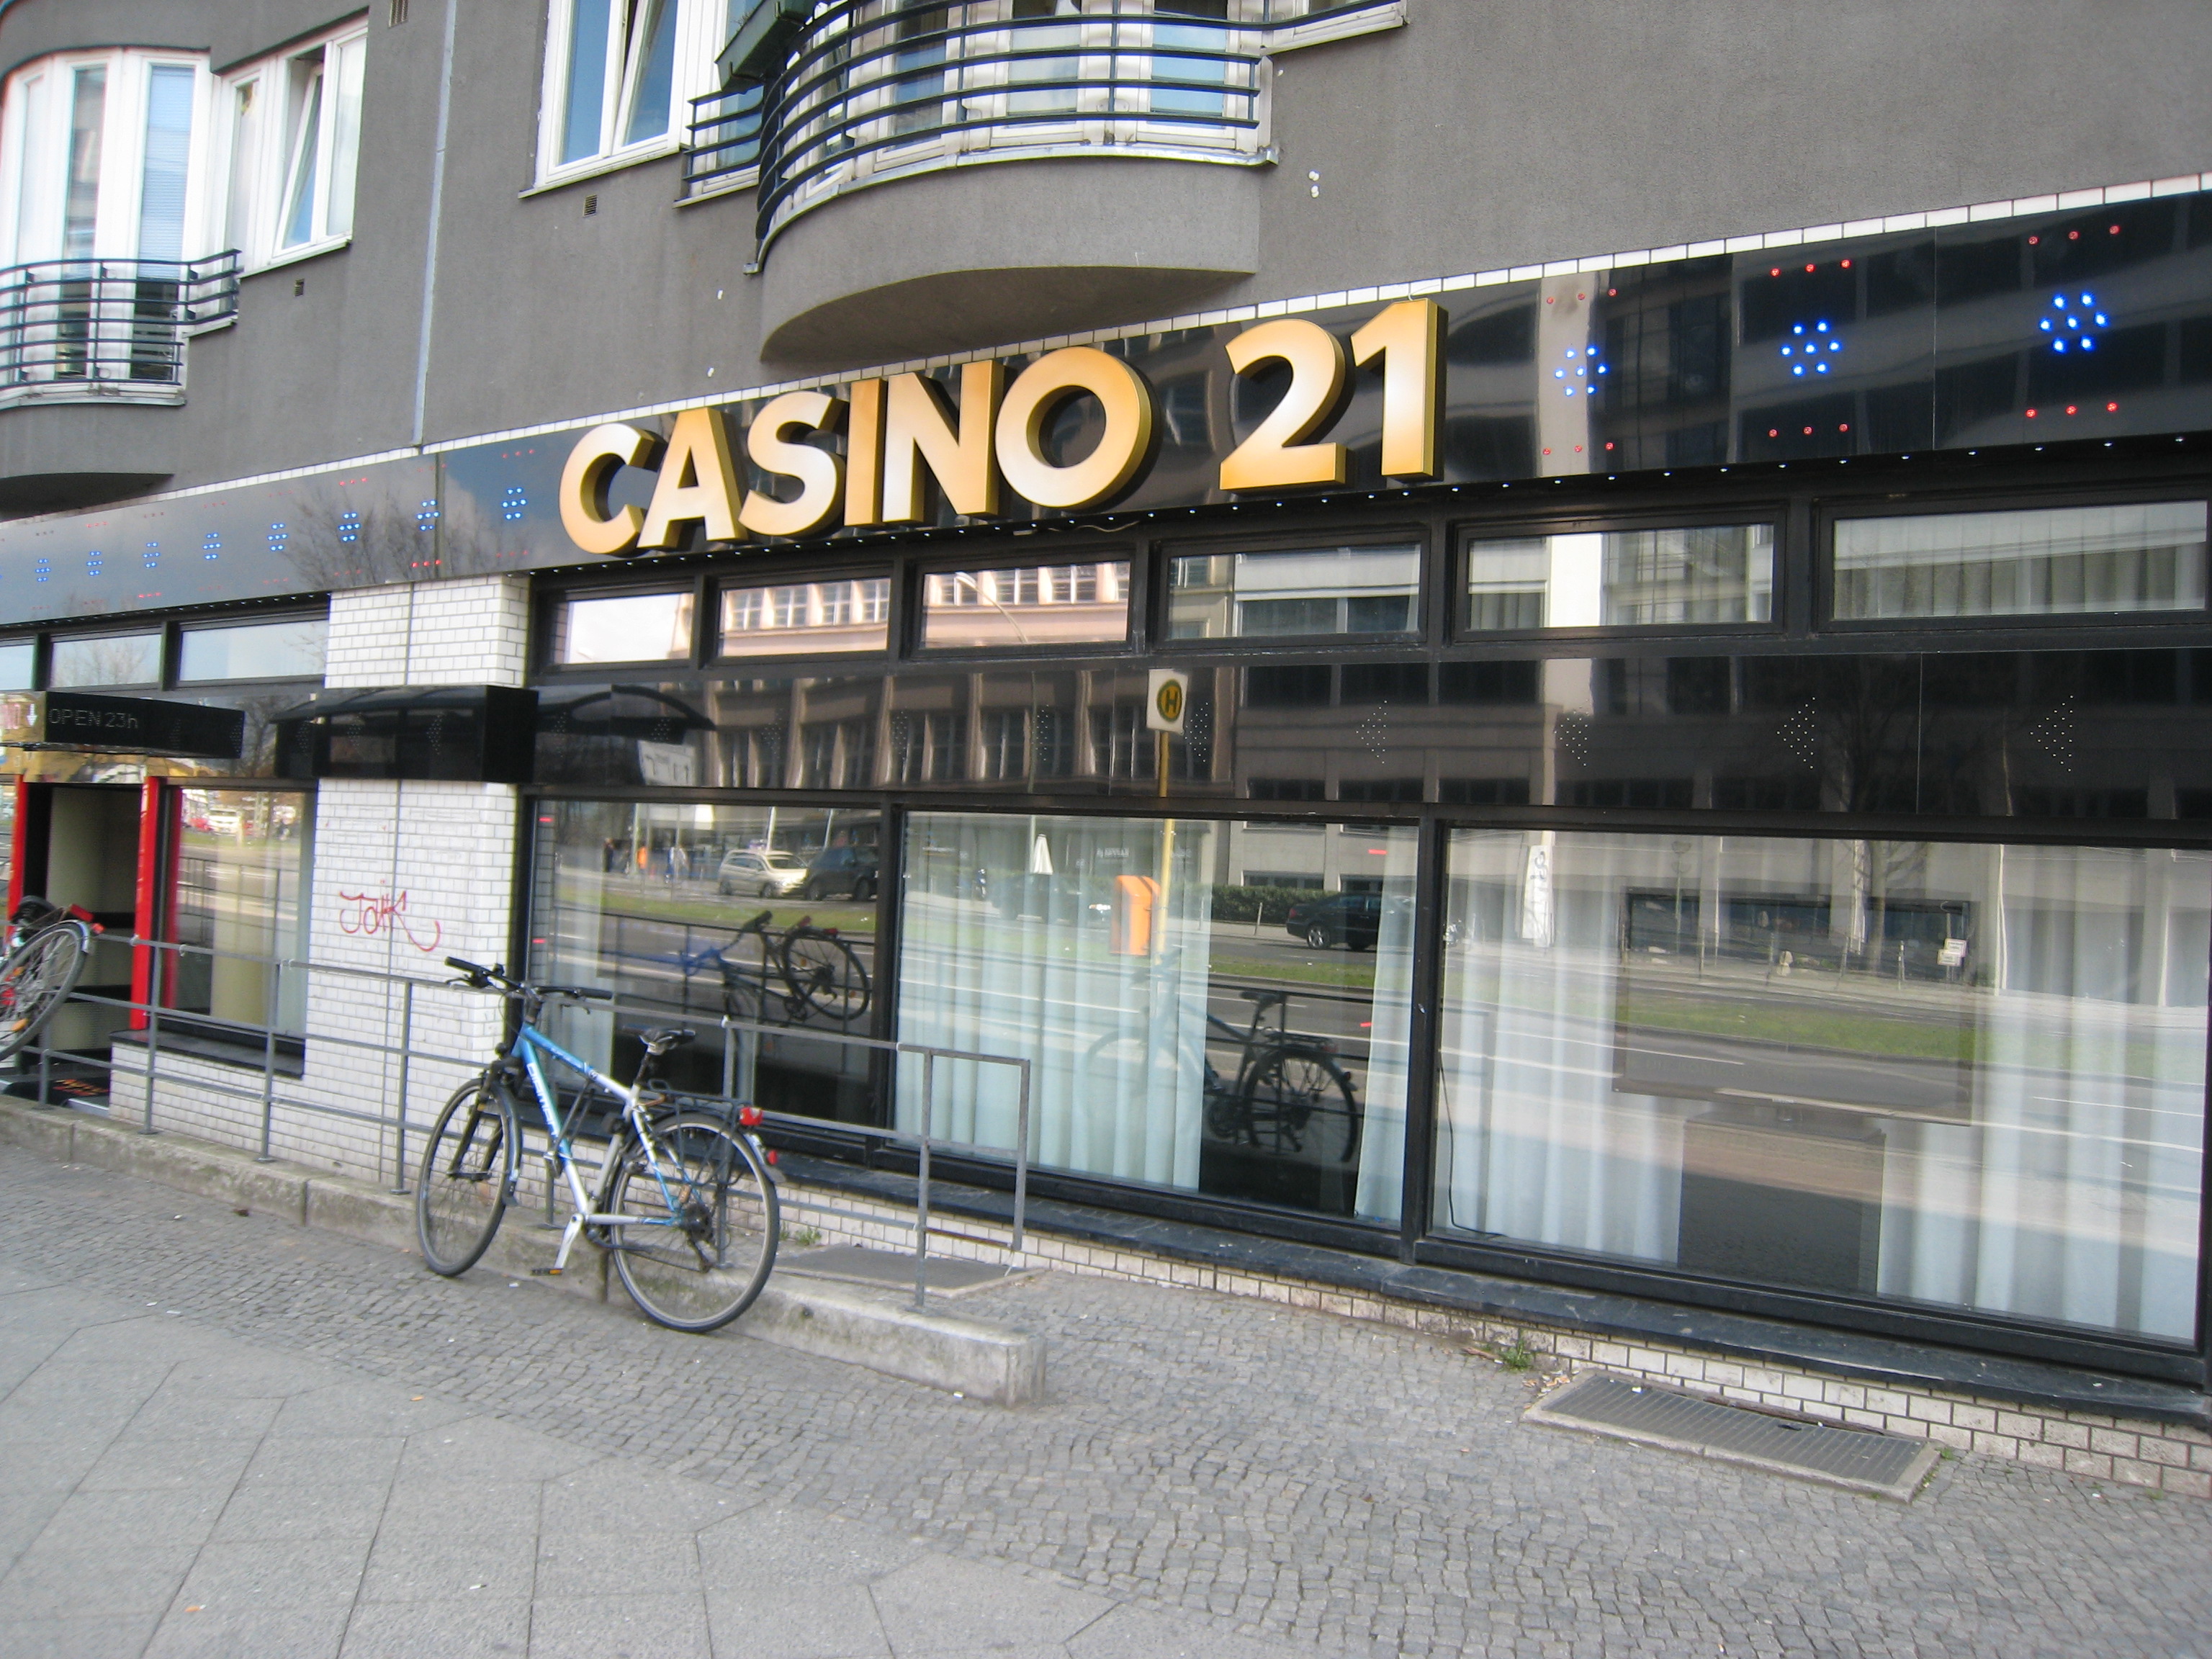 Casino 21